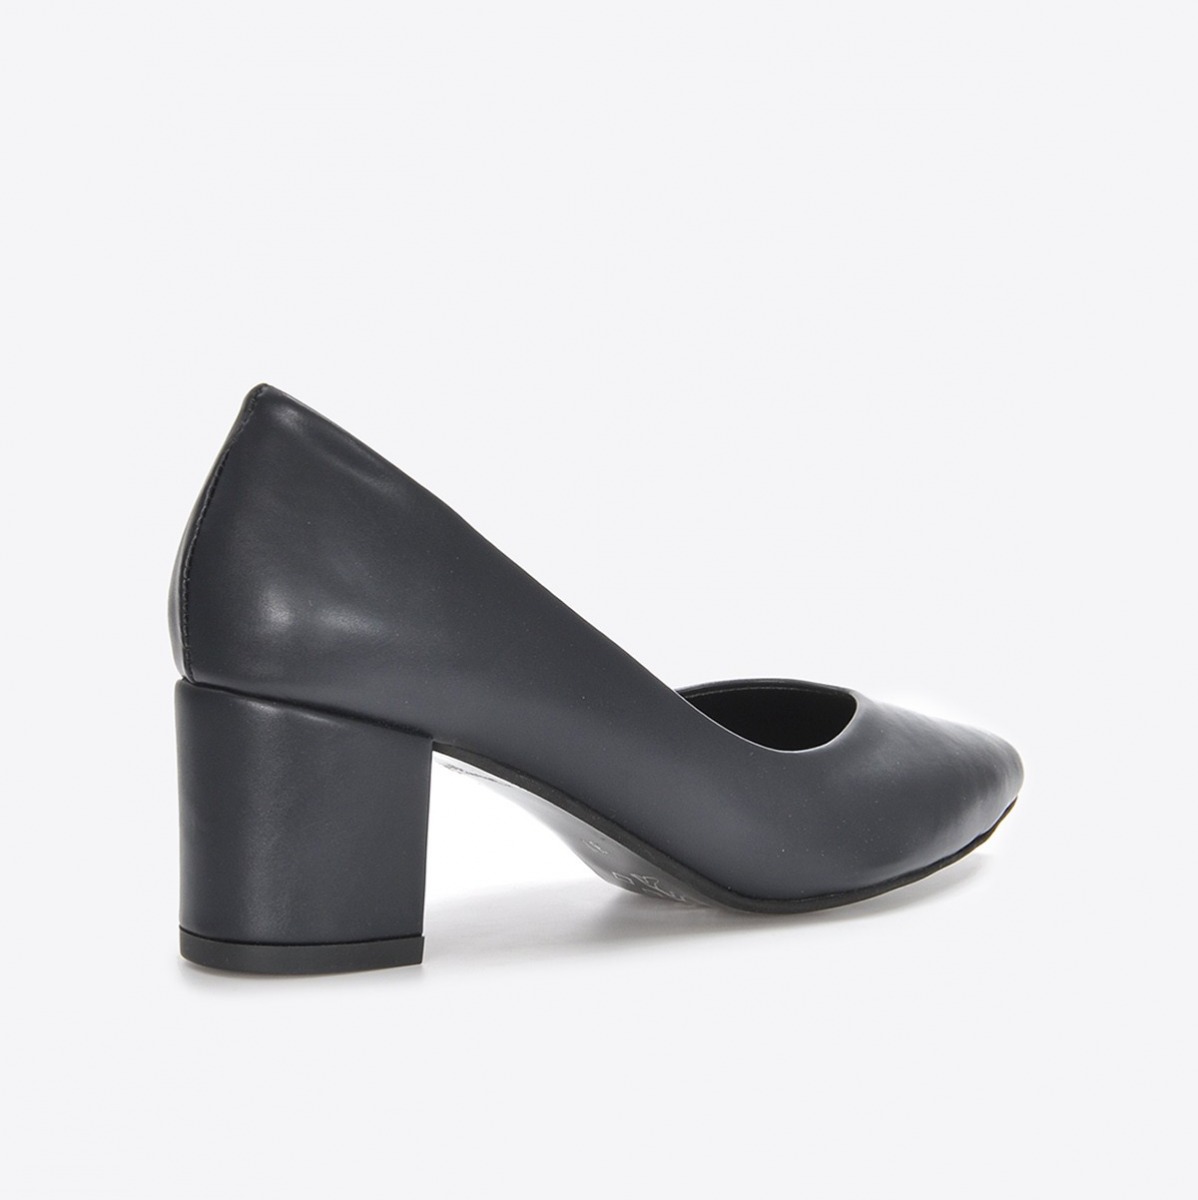 Flo Kadın  Lacivert Klasik Topuklu Ayakkabı VZN21-040Y. 2